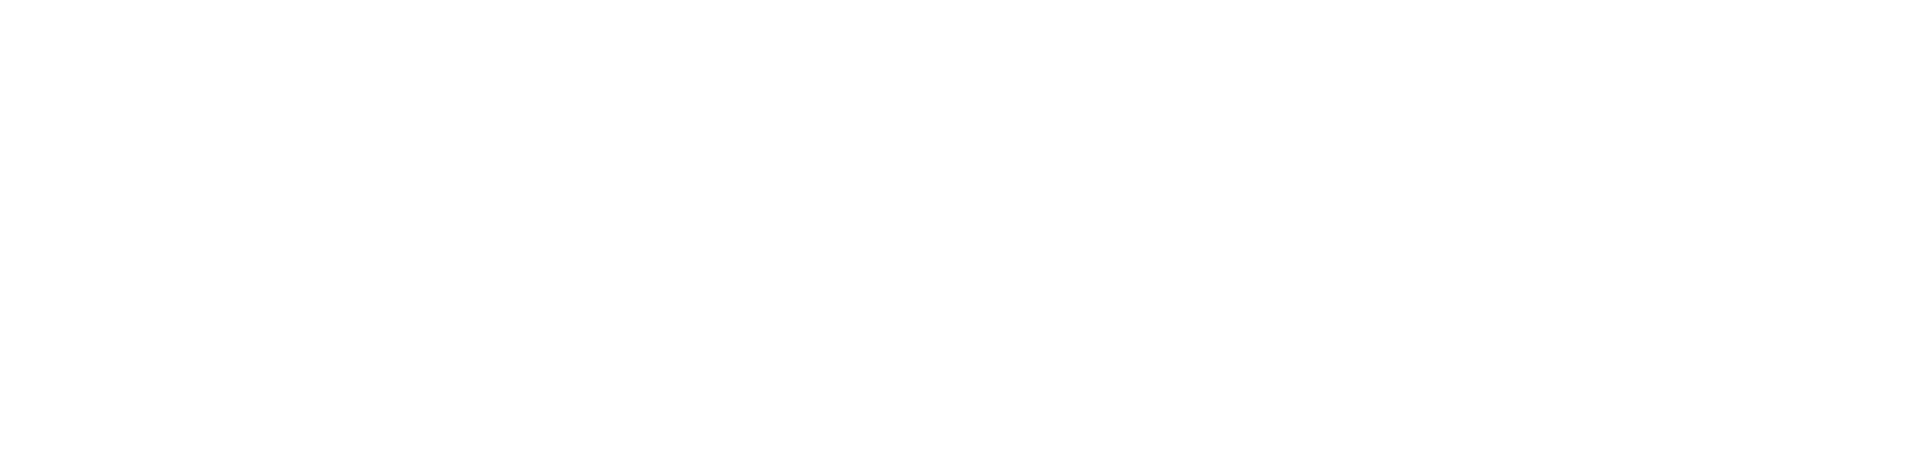 International Supercross Race Team